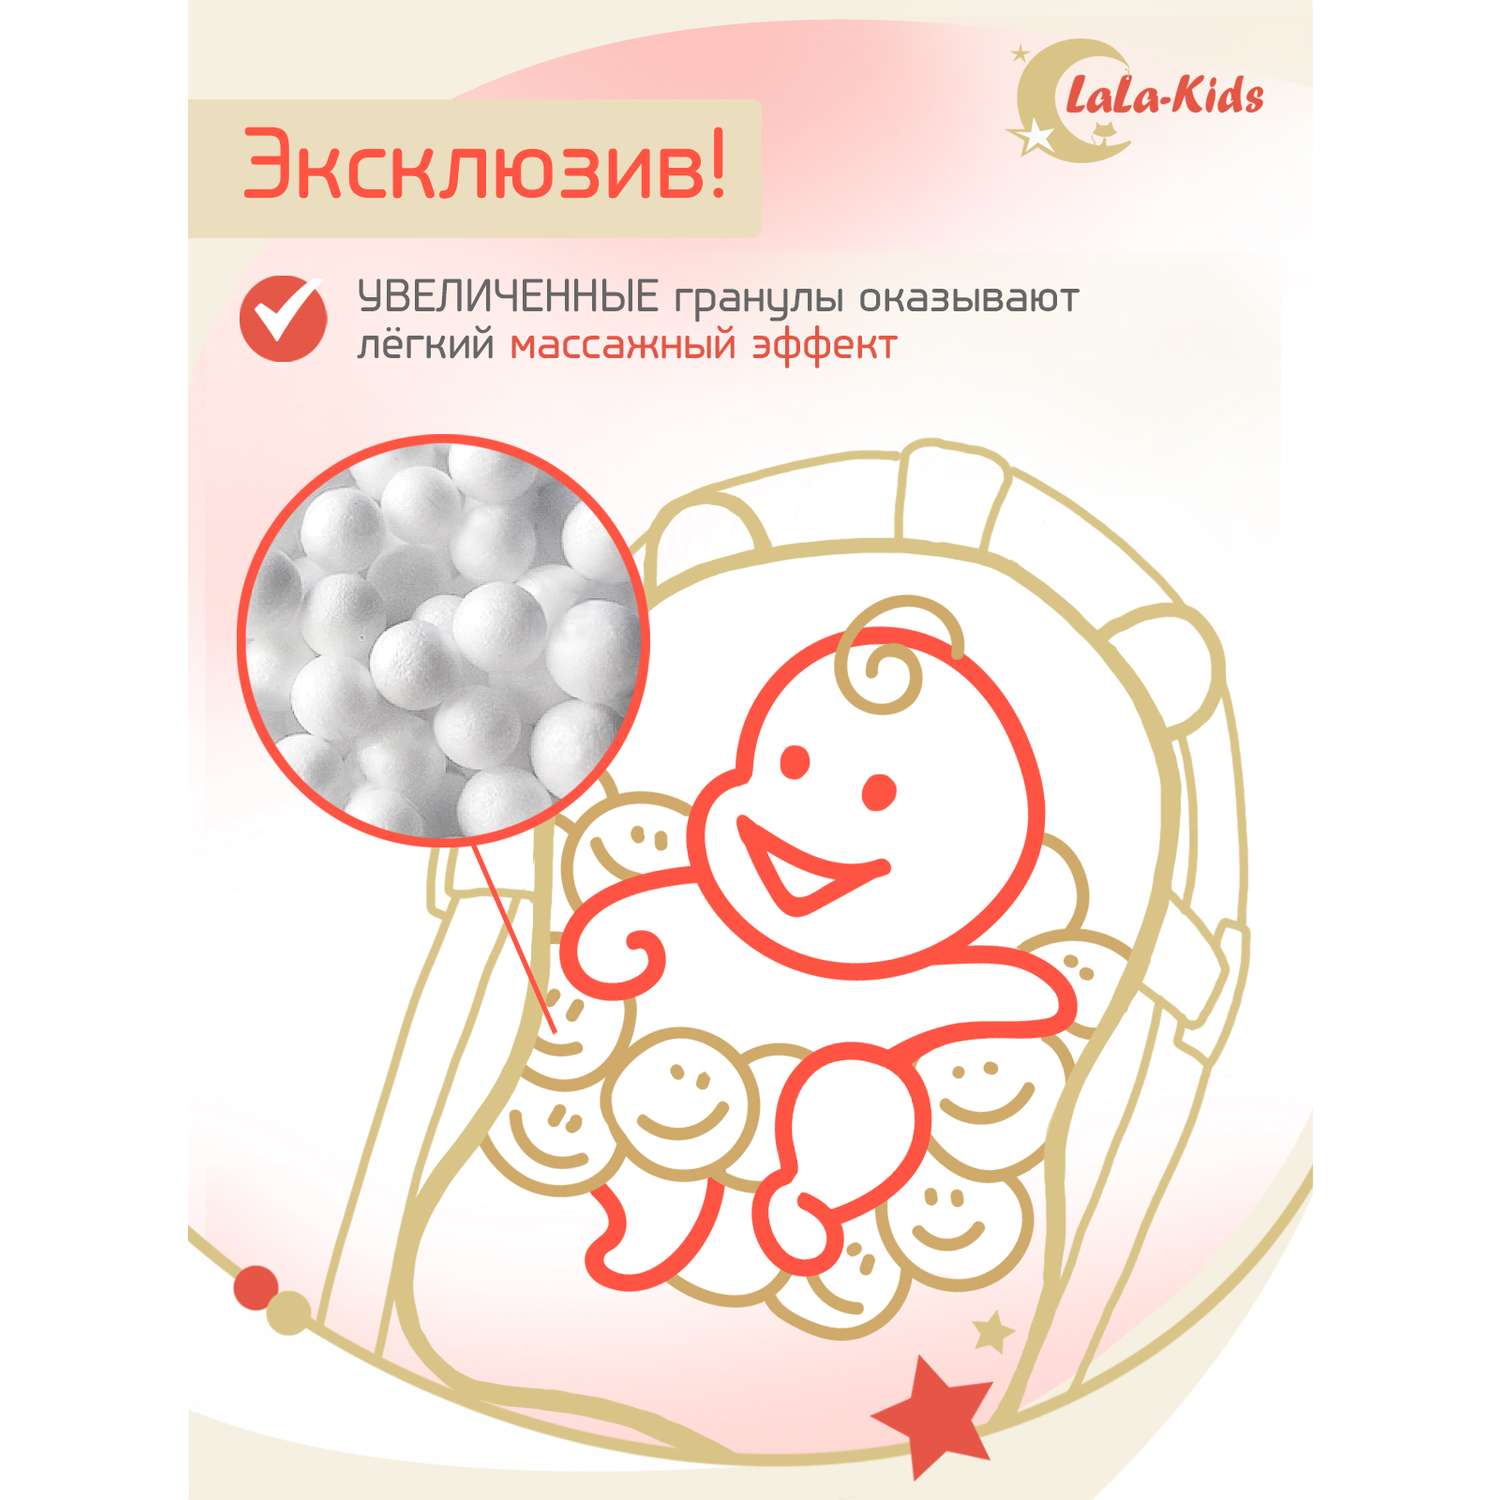 Ванночка для новорожденных LaLa-Kids складная с матрасиком и термометром в комплекте - фото 12